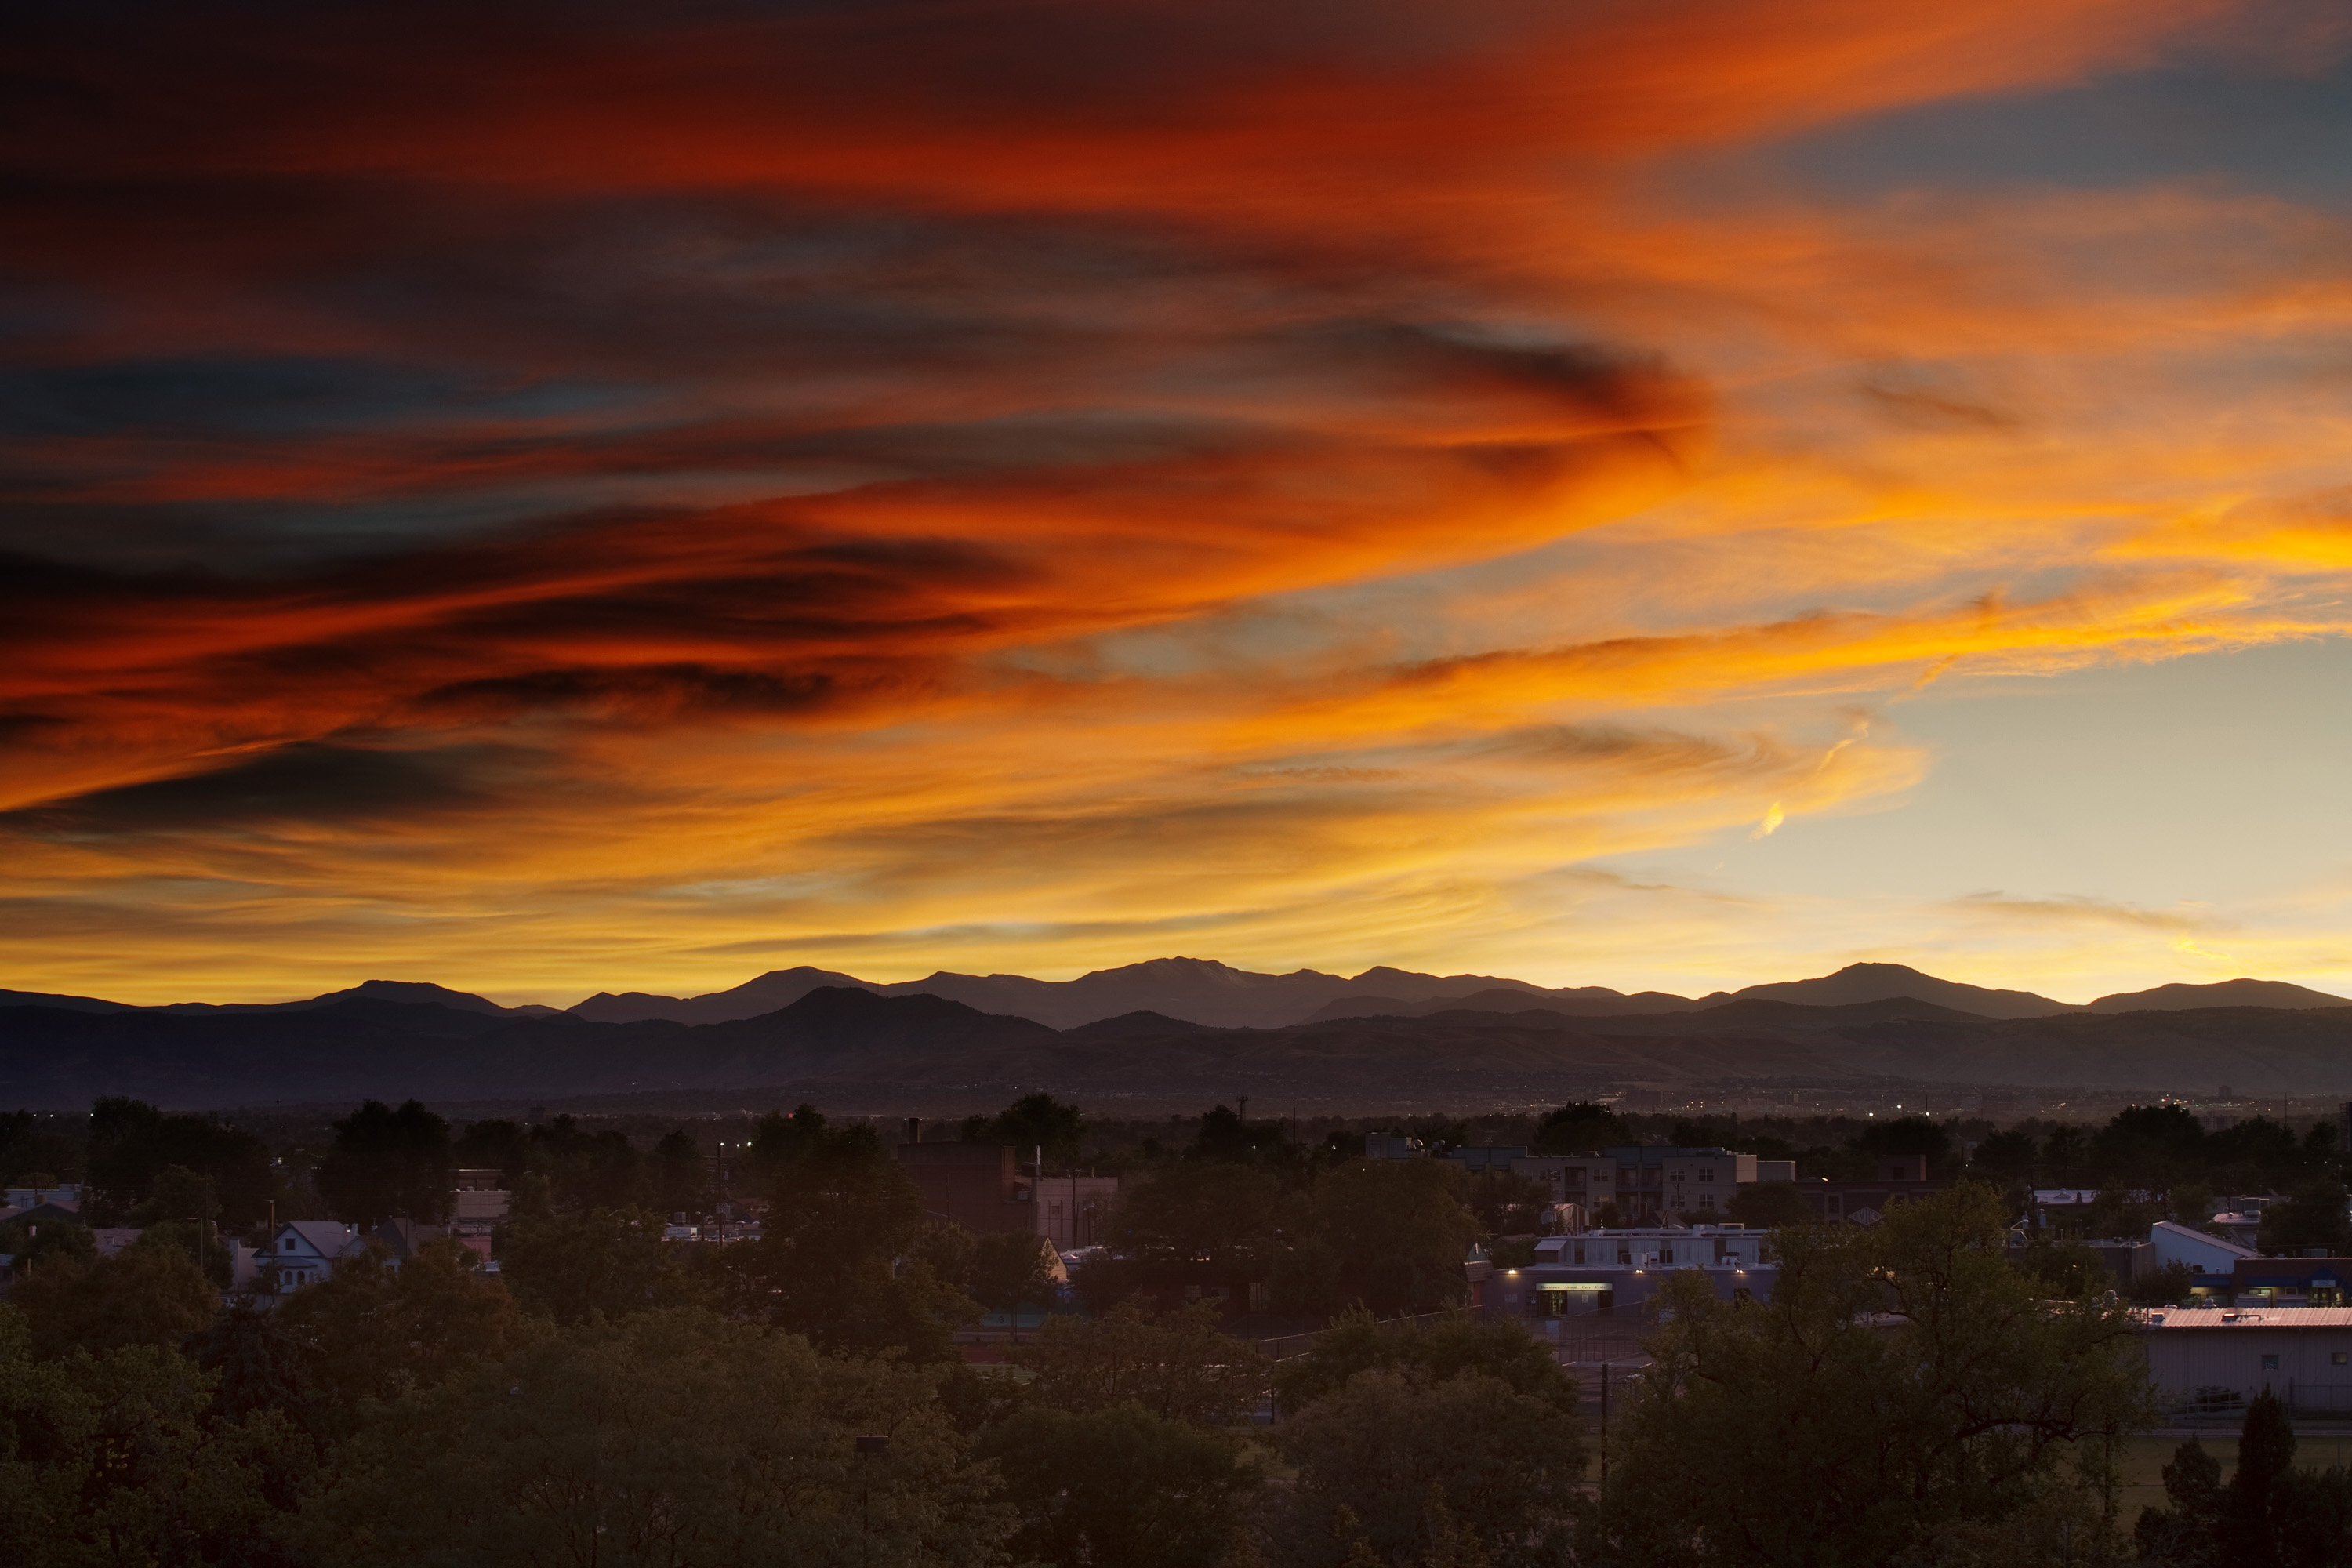 Mount Evans sunset - September 22, 2011